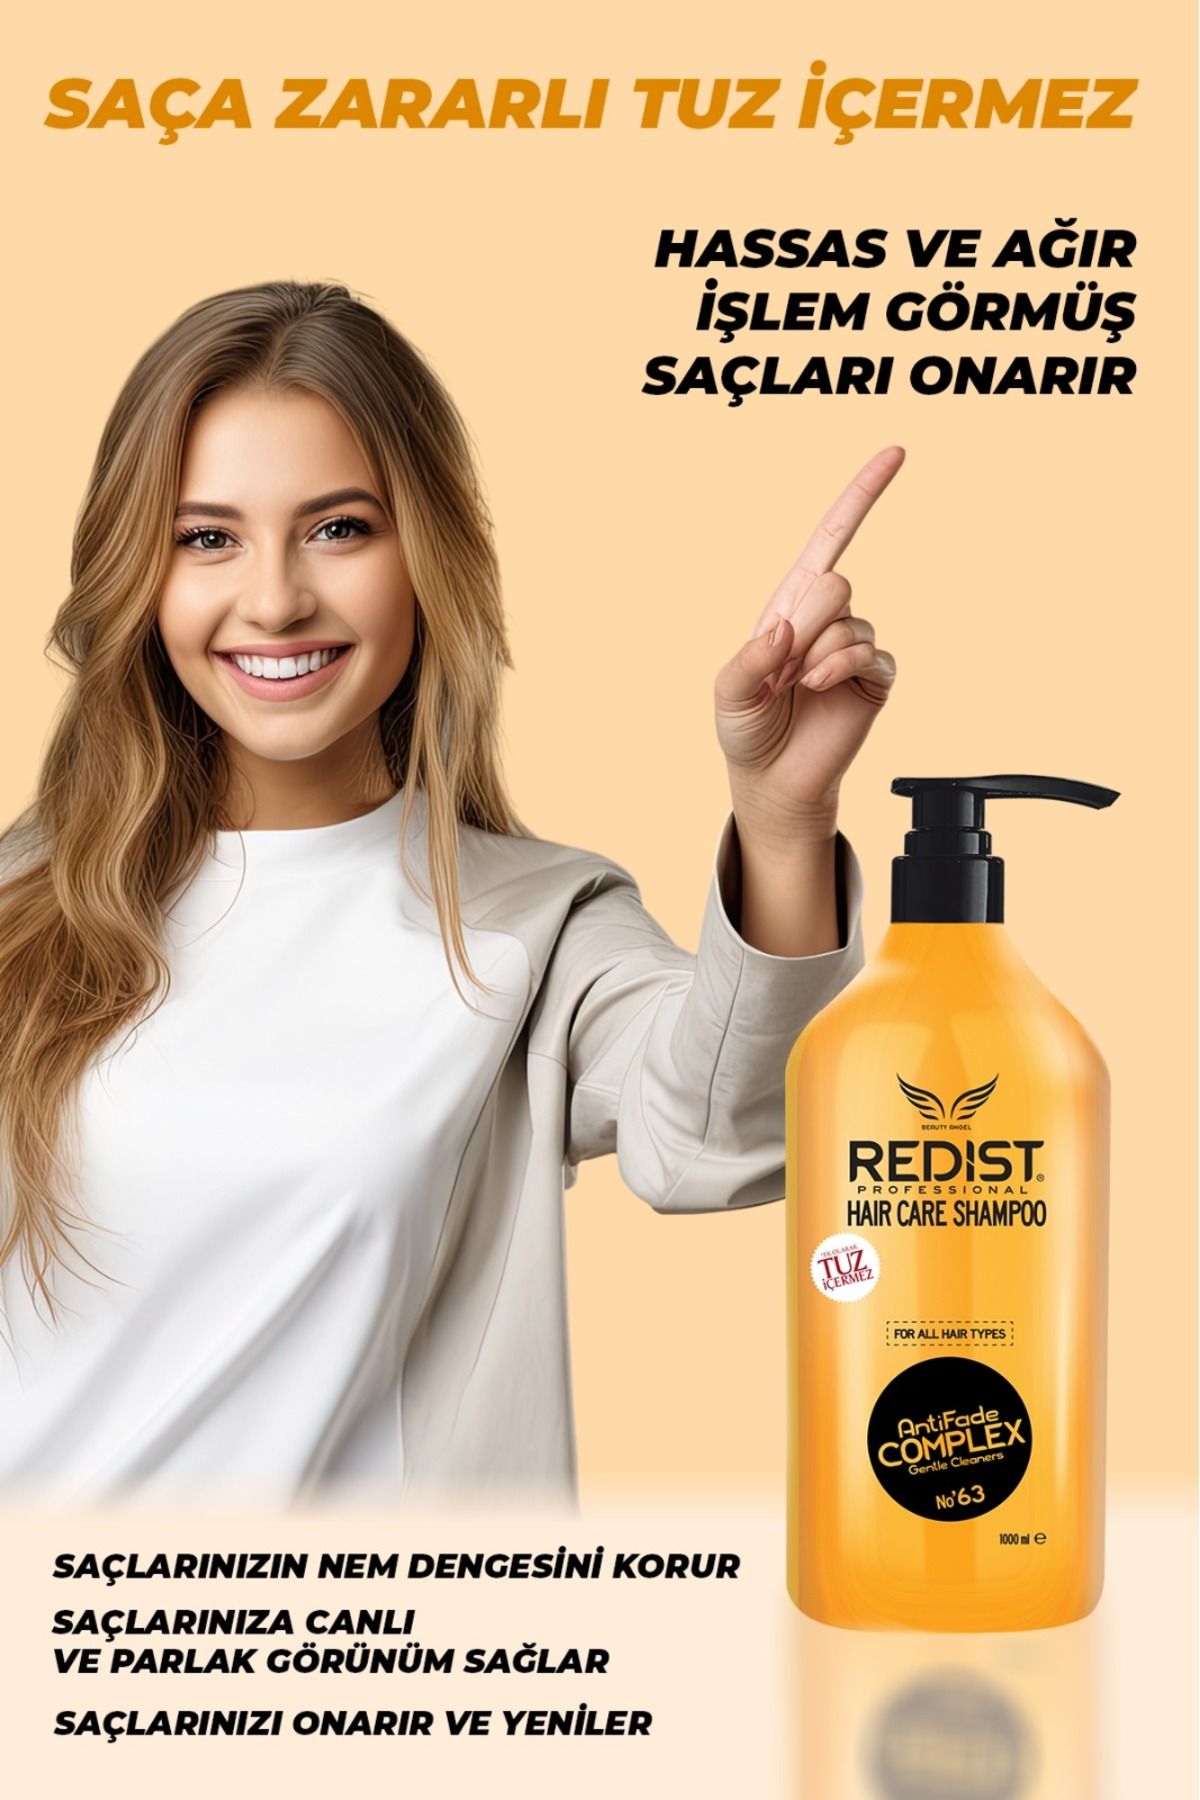 Redist Haircare Shampoo 1000 Ml Şampuan Tuz Içermez, Unisex, Tüm Saçlar Için Uygun